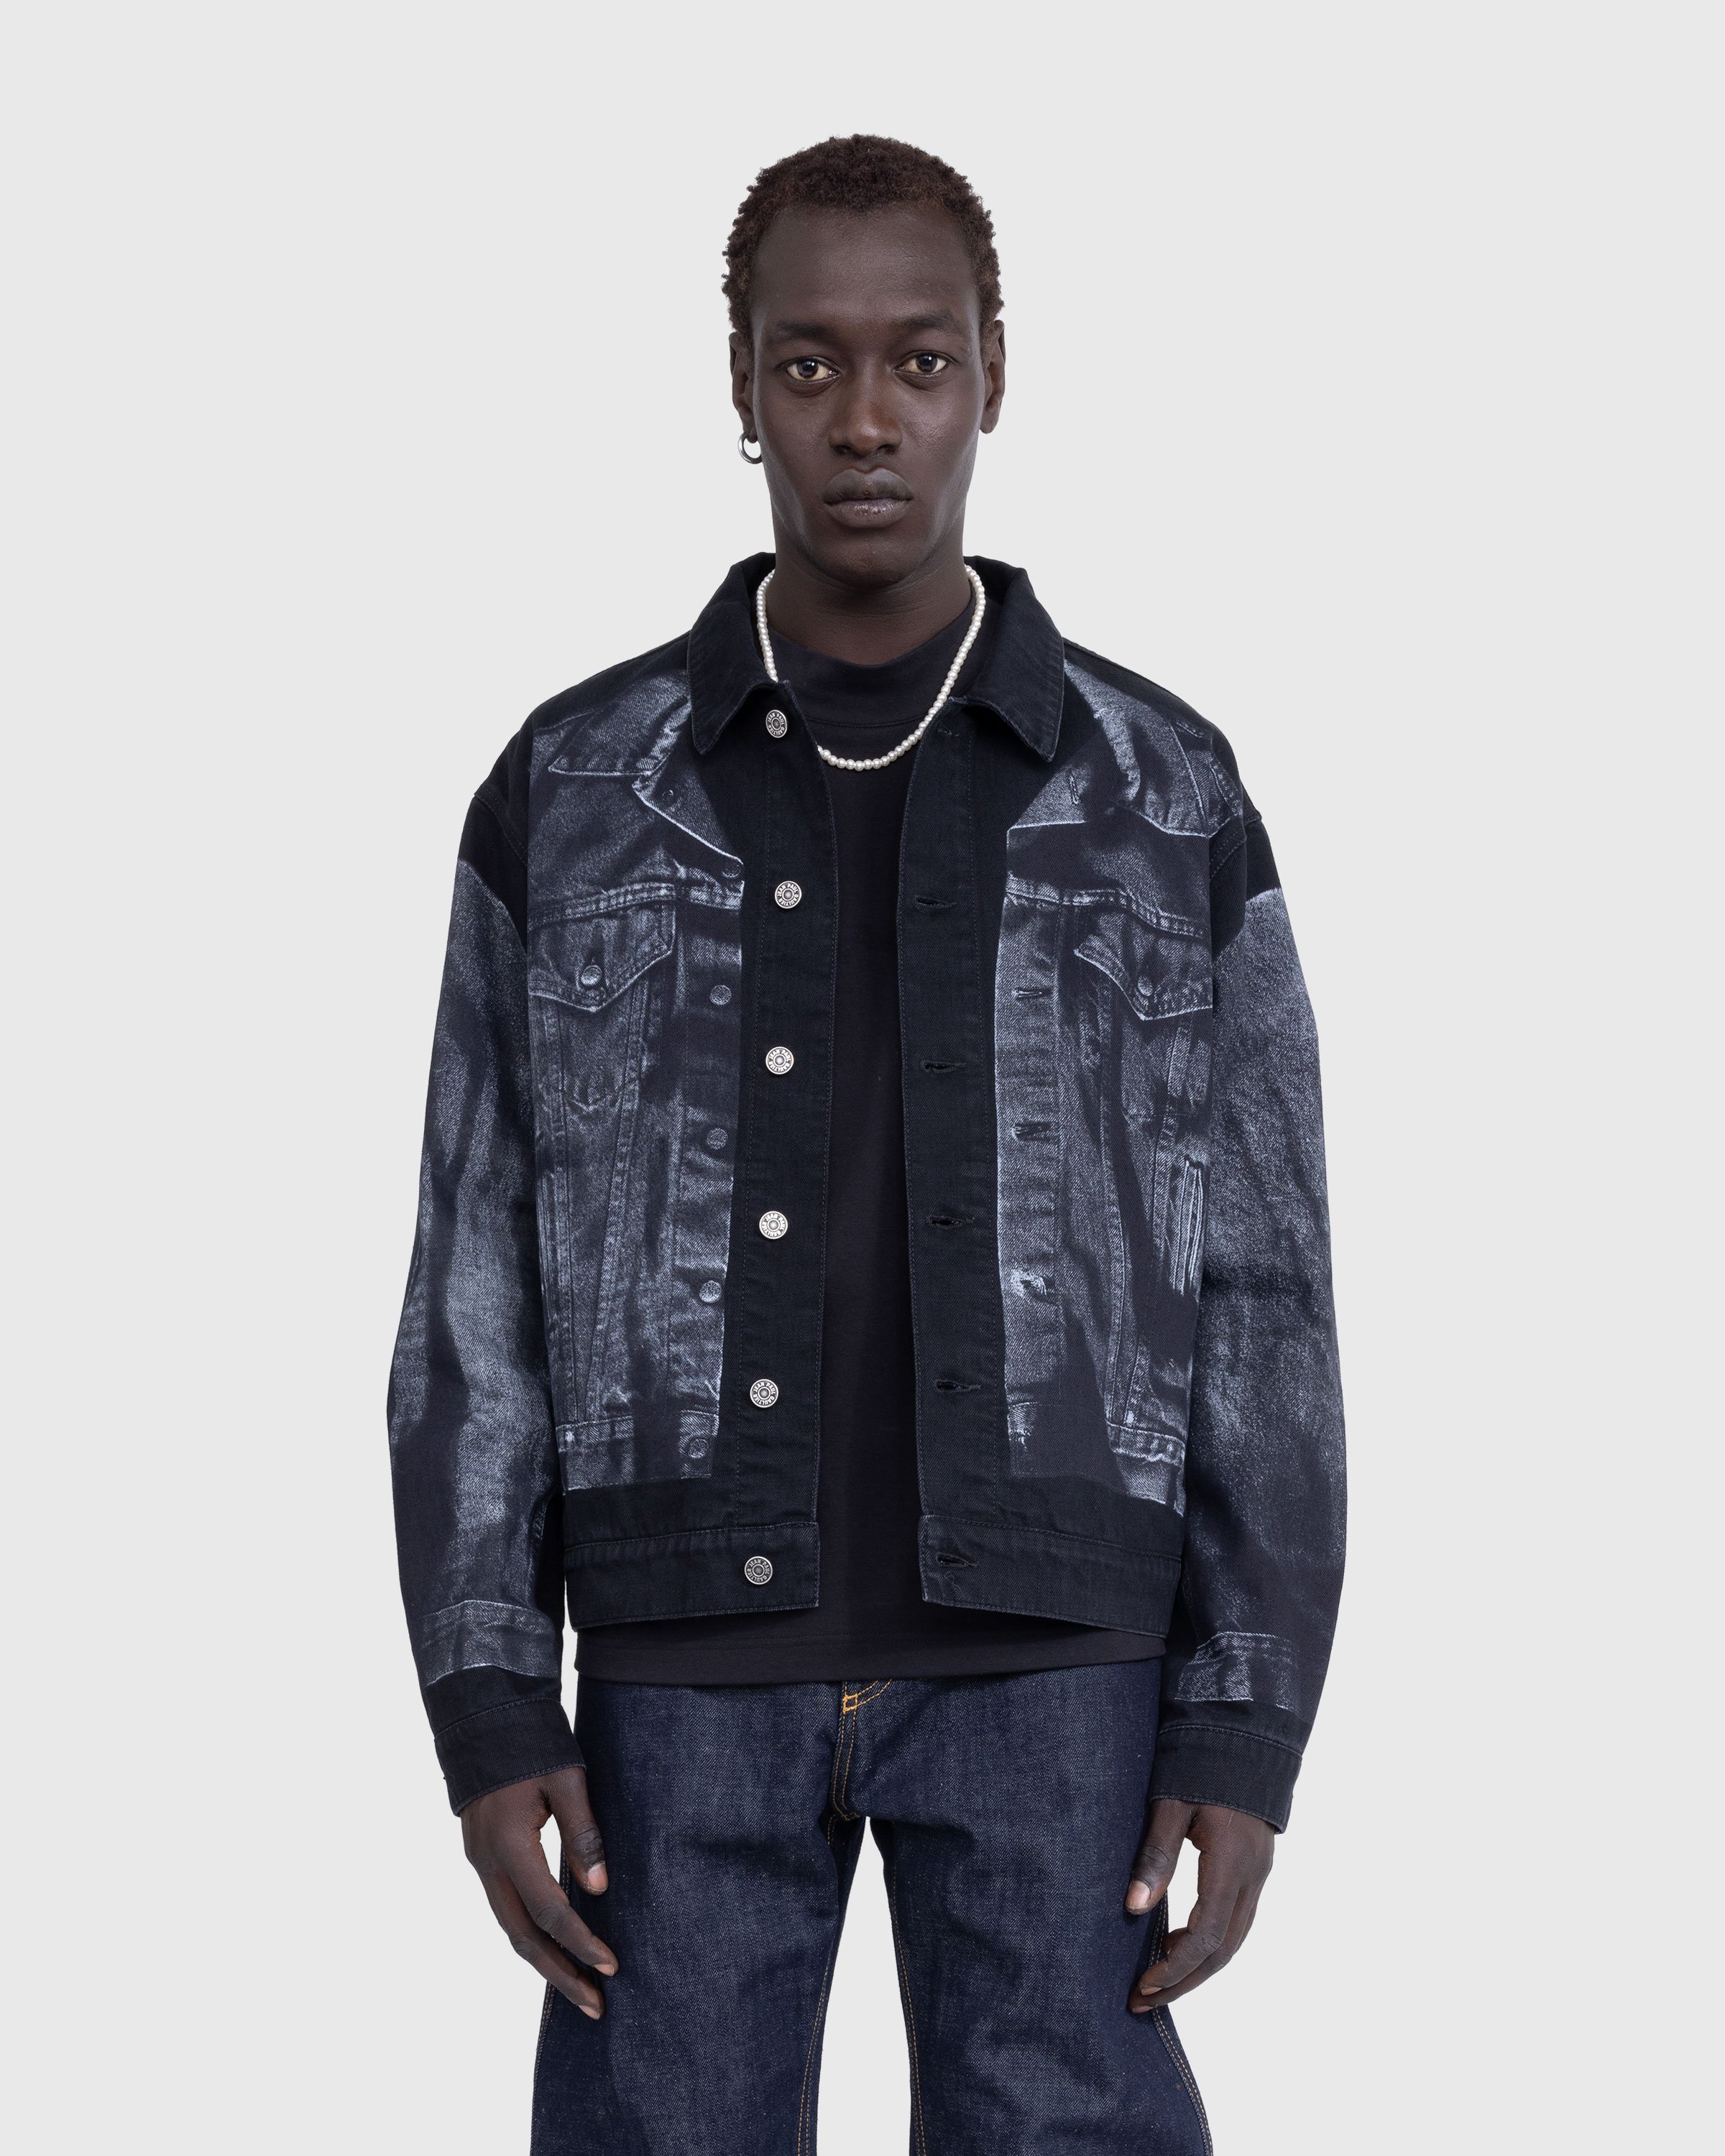 Jean Paul Gaultier - Trompe L'œil Denim Jacket Black - Clothing - Black - Image 2